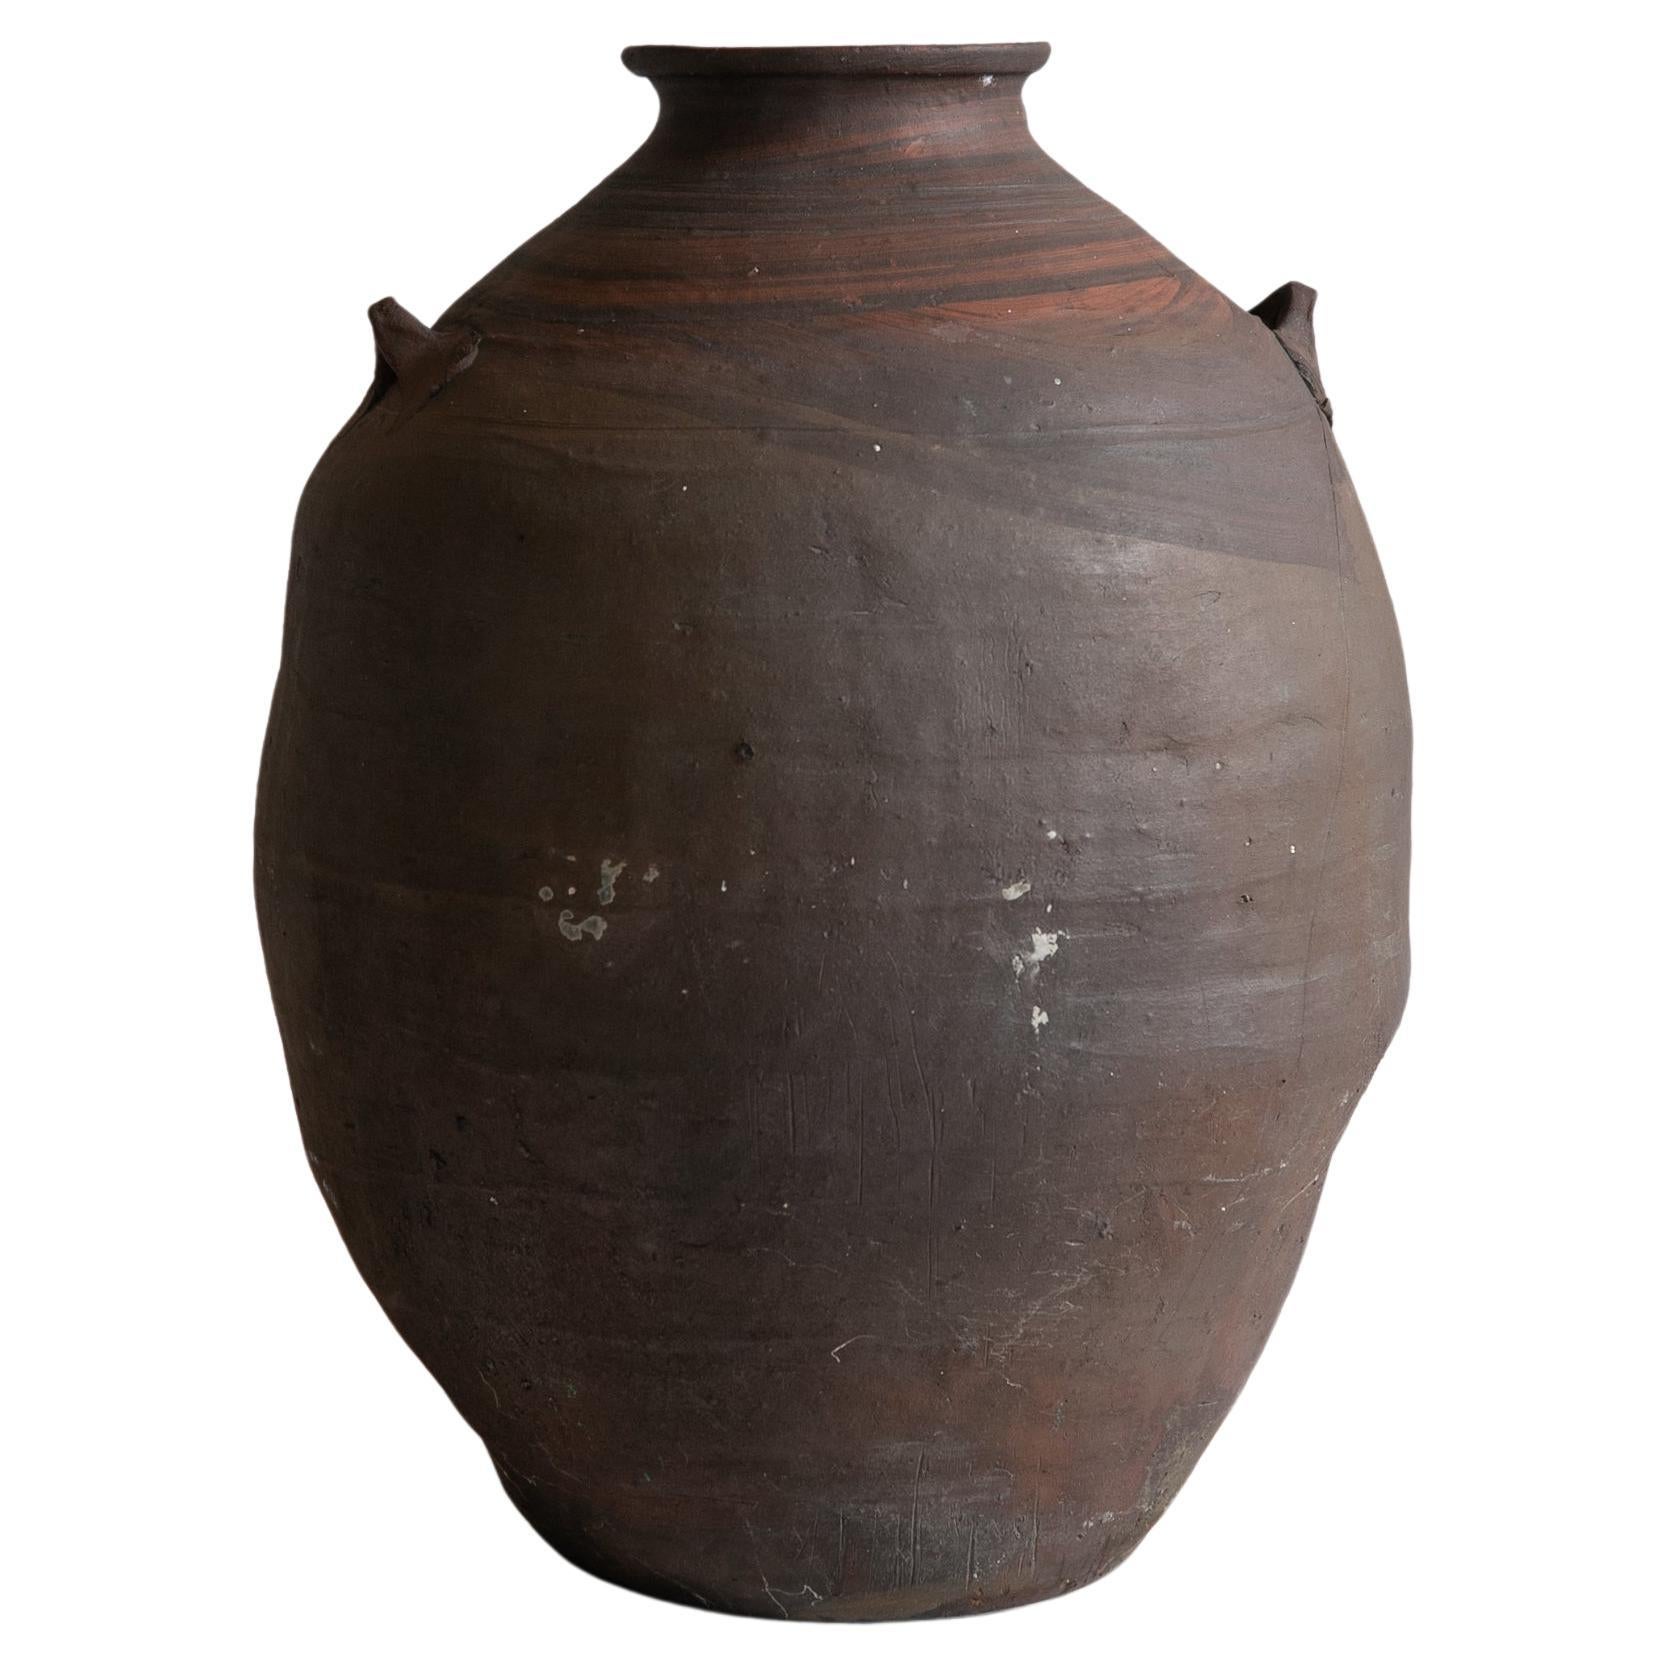 Pot japonais ancien / 1900s / Vase atmosphere Cool / Wabisabi Art / Mingei